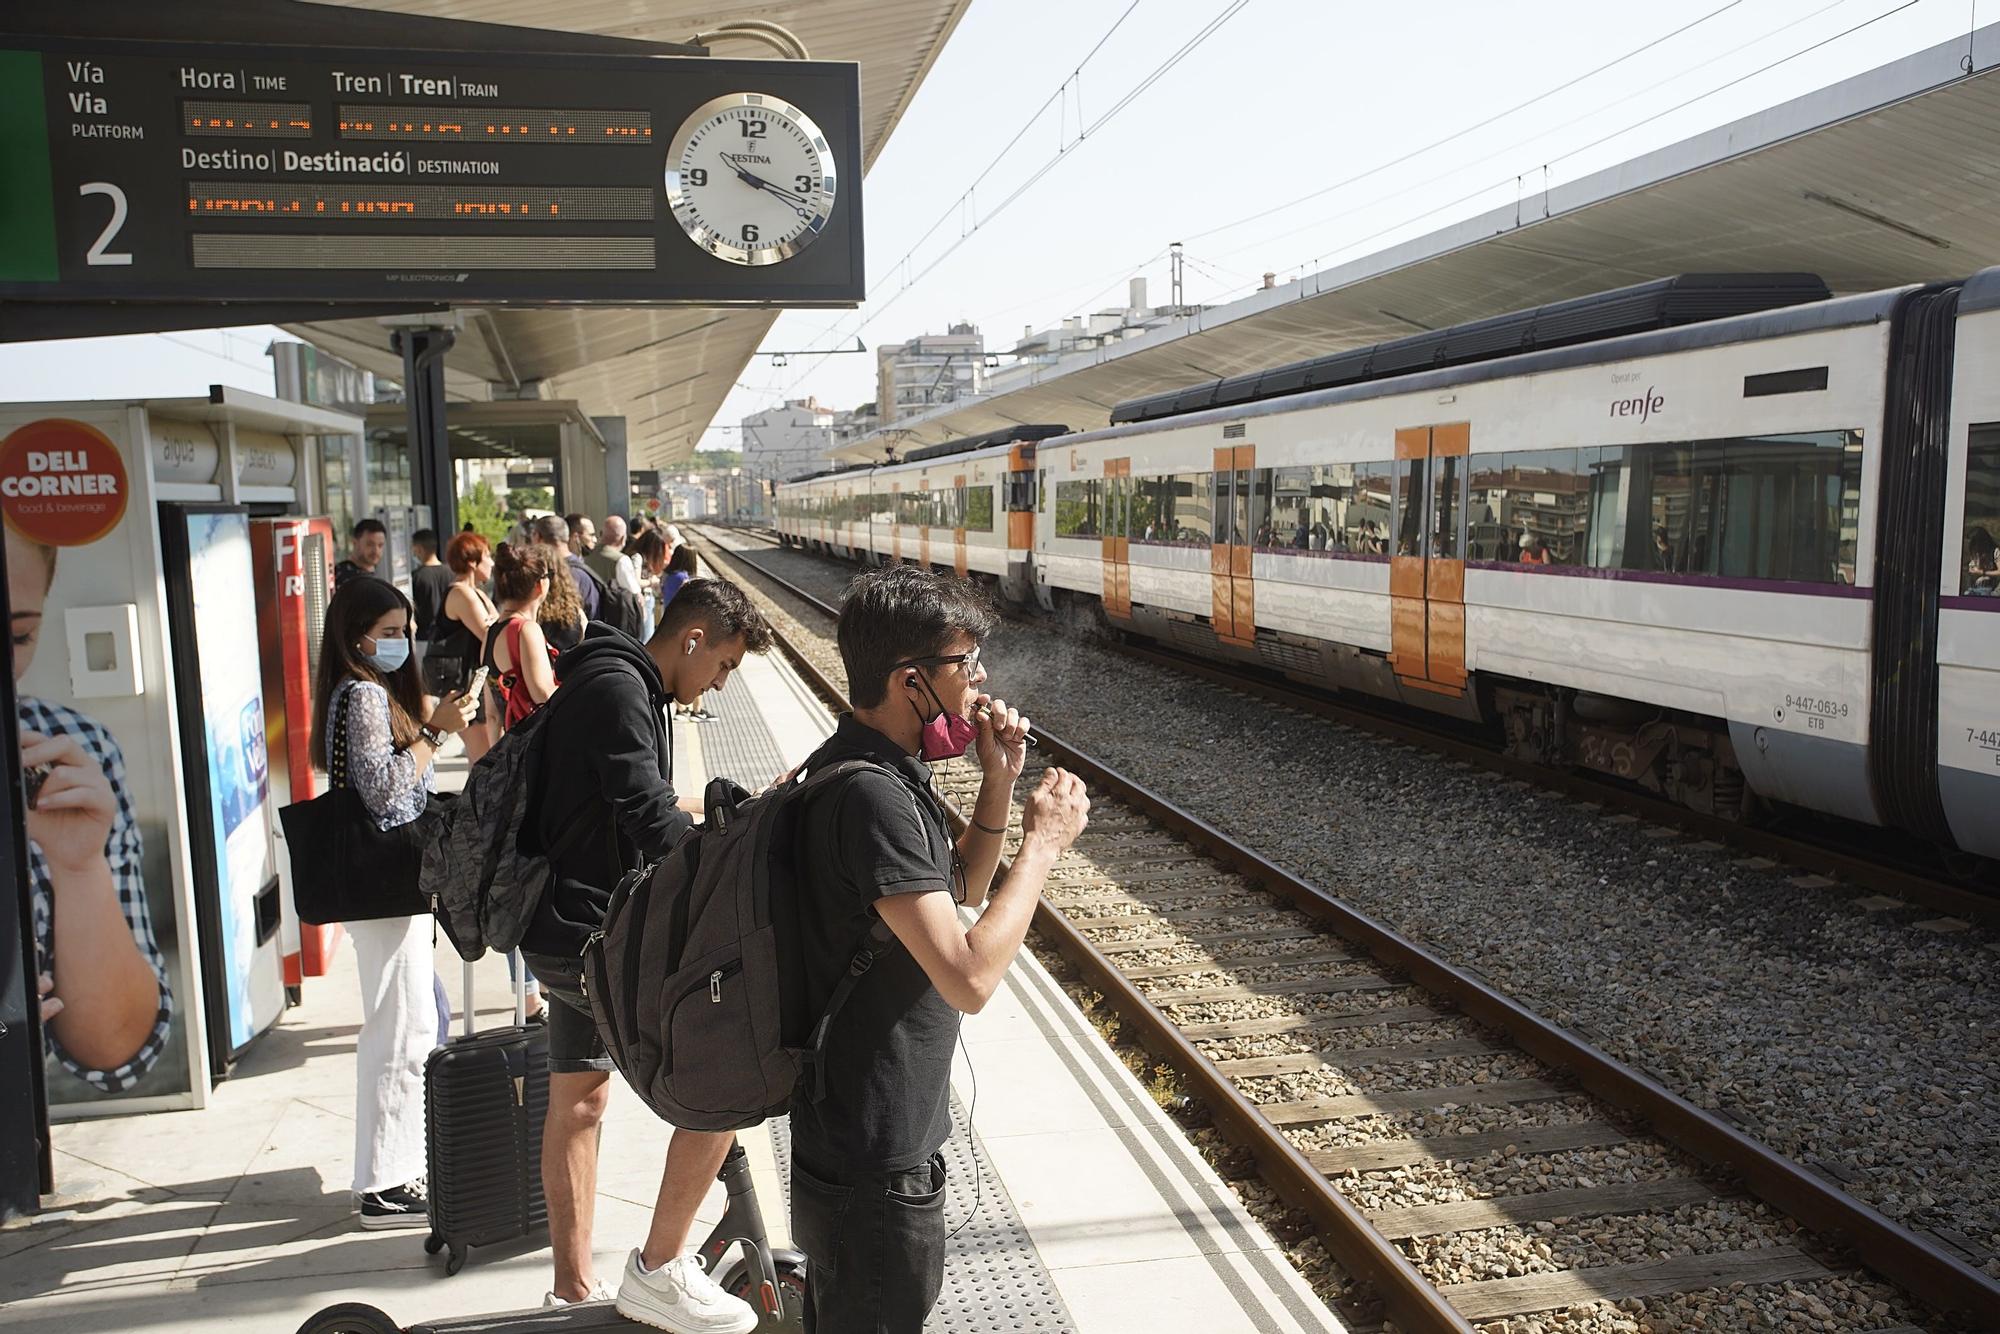 Matí caòtic a les estacions de tren de Girona